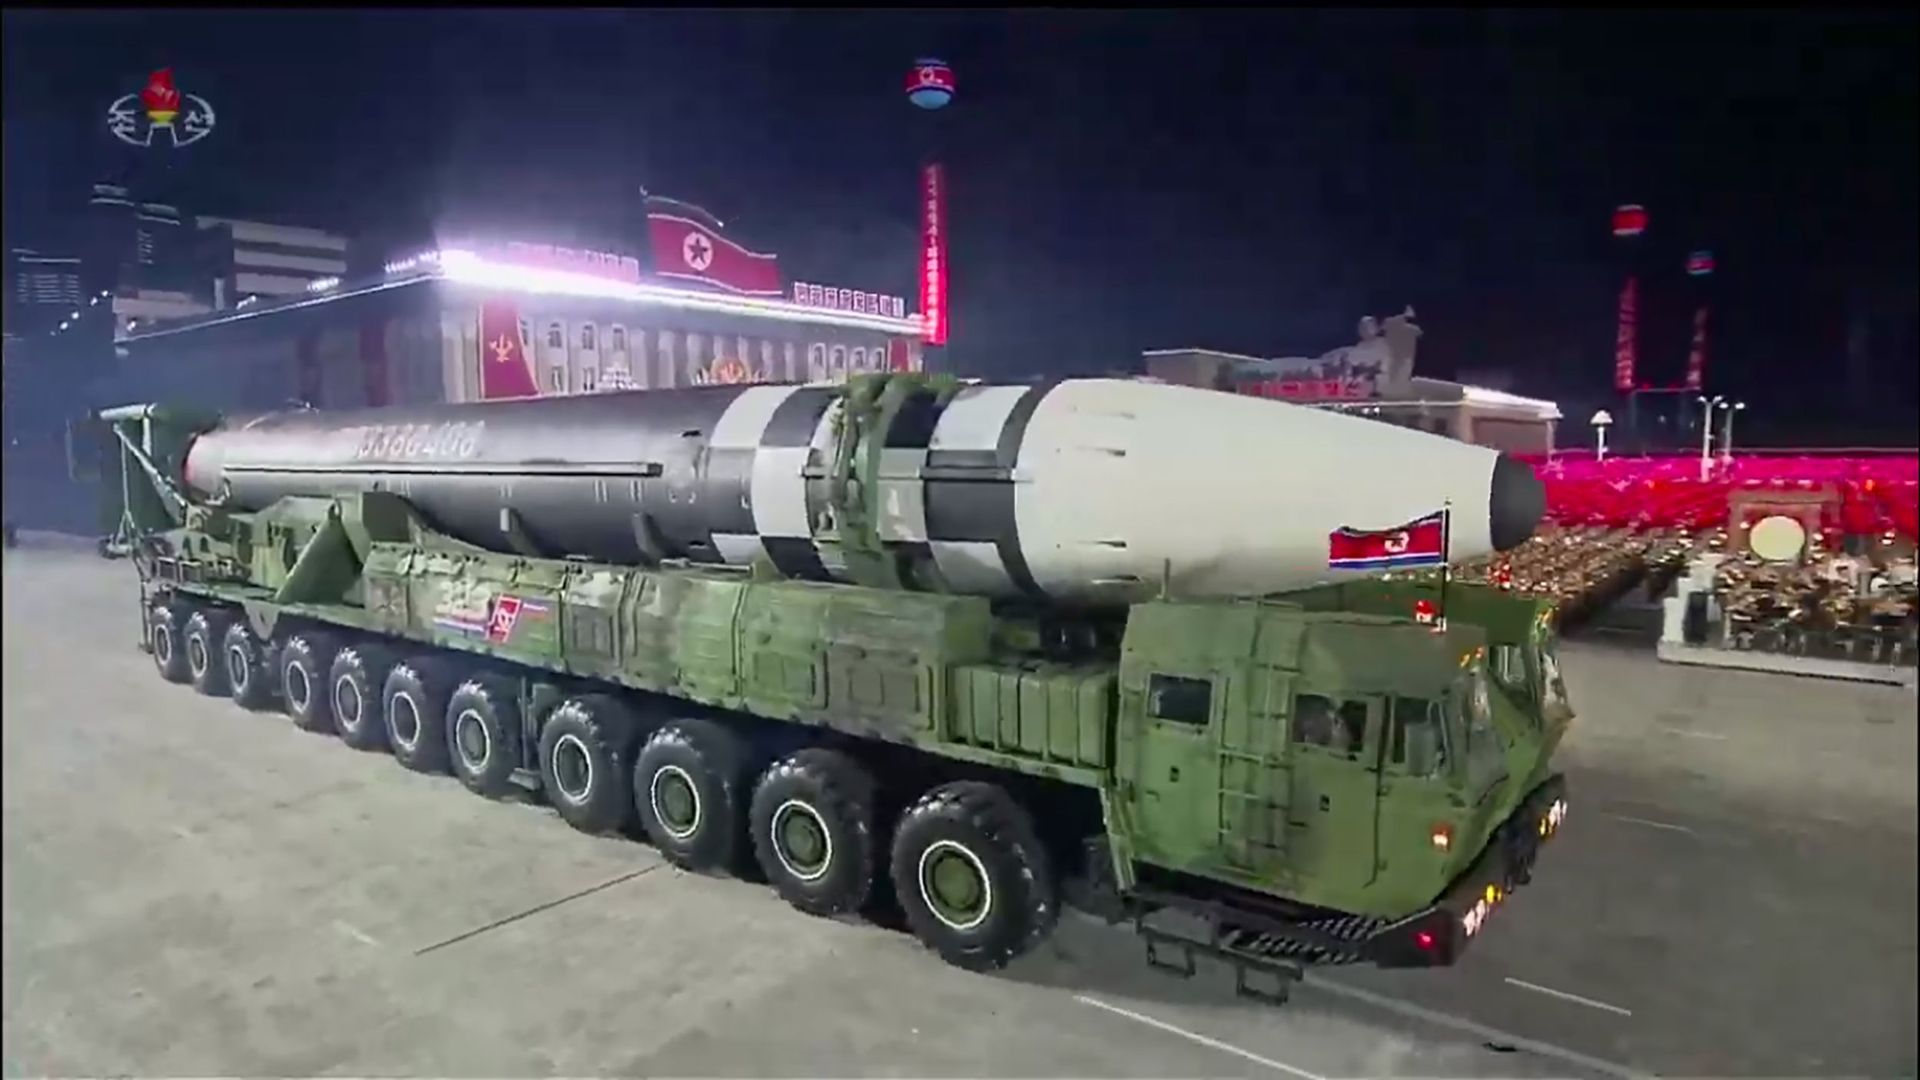 La longueur de ce missile est estimée à 24 mètres et son diamètre à 2,5 mètres.